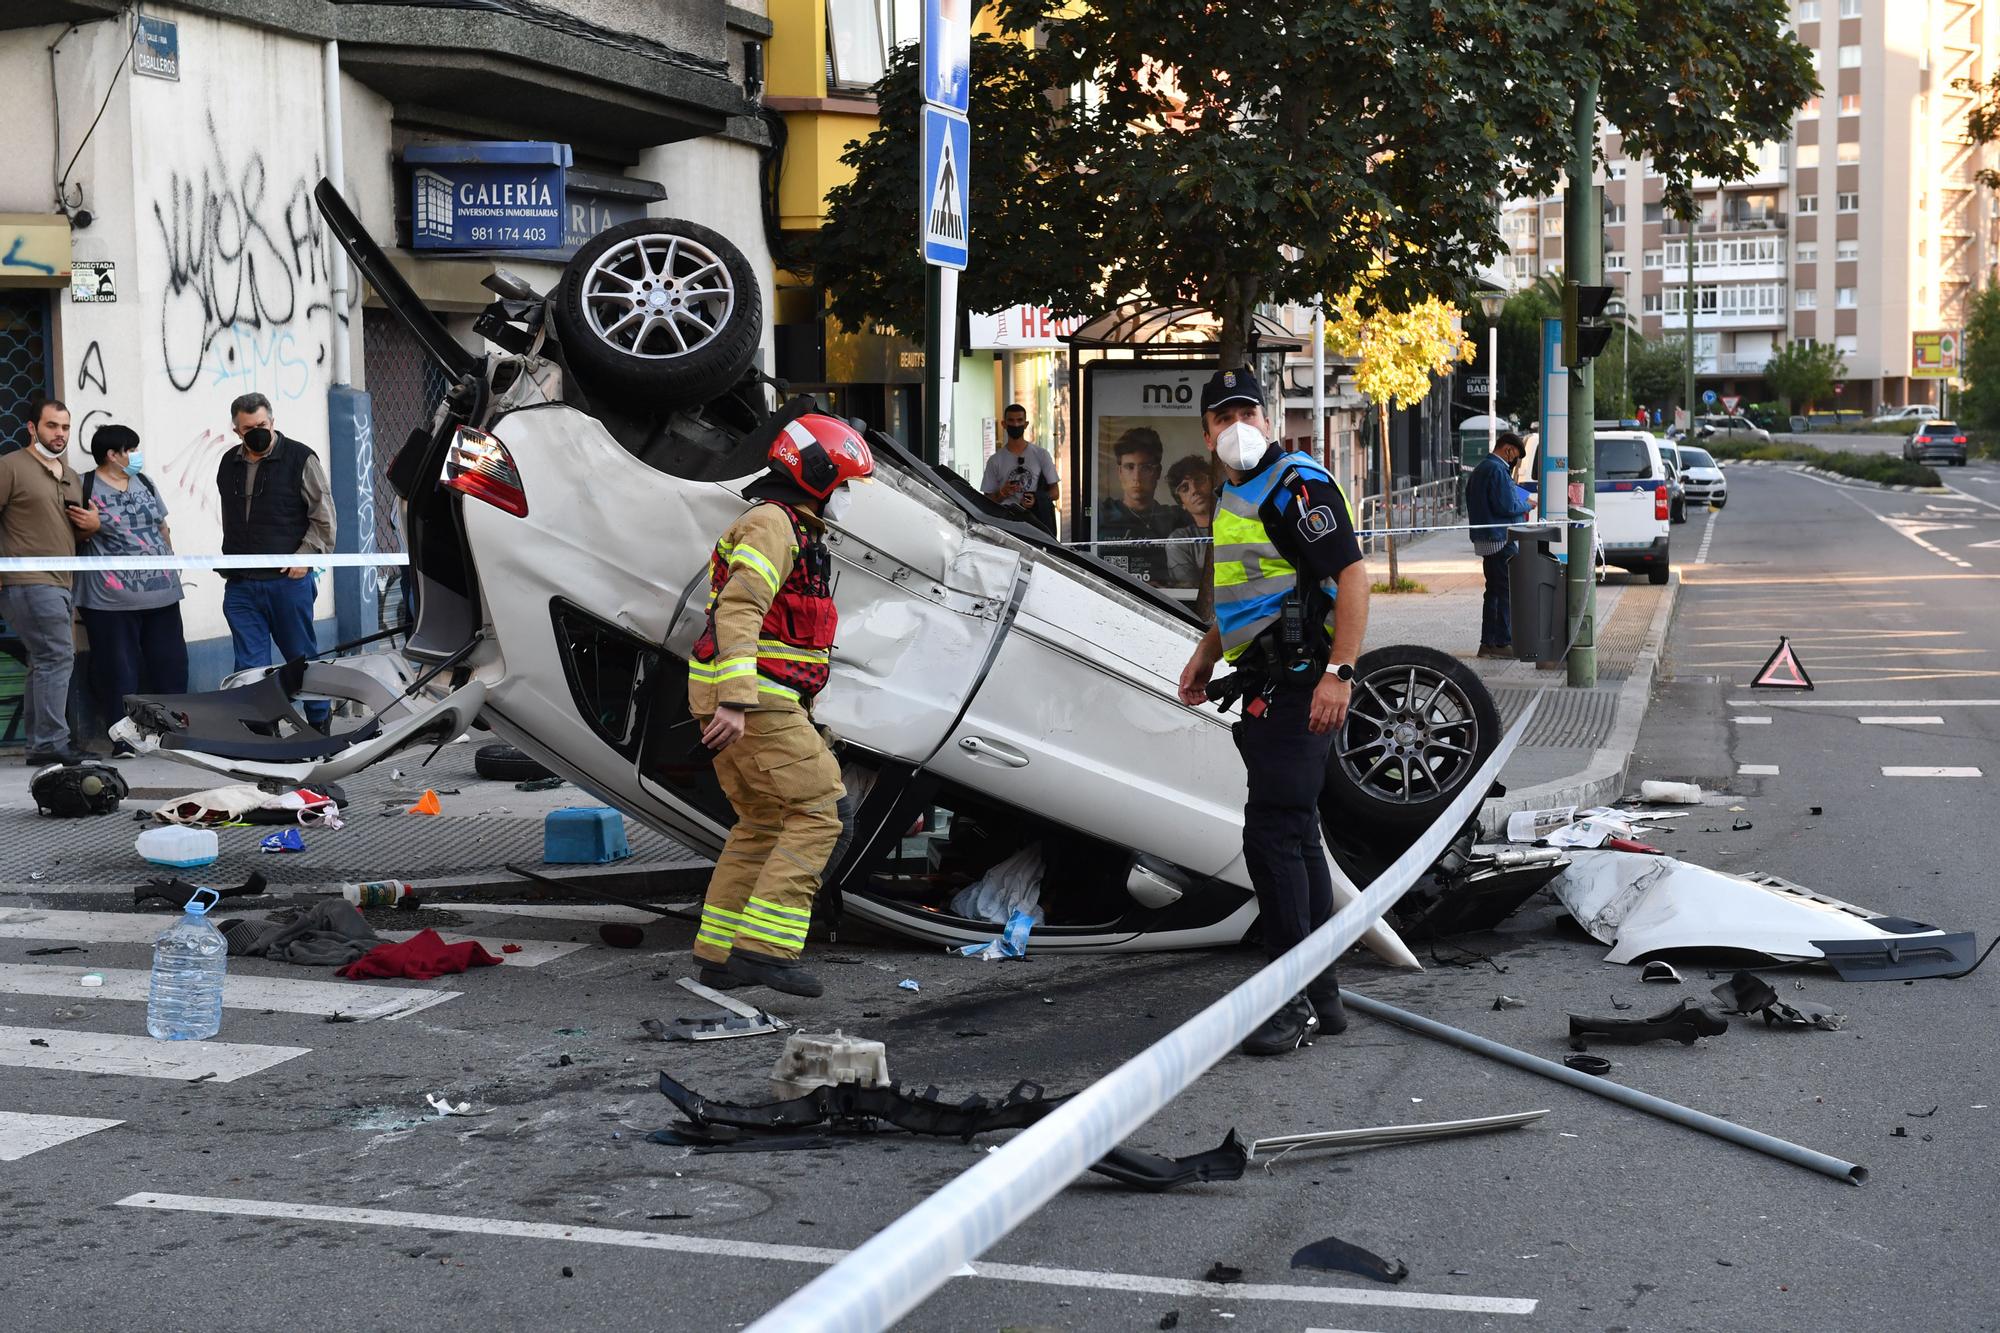 Espectacular accidente en A Coruña con un coche precipitado de un viaducto